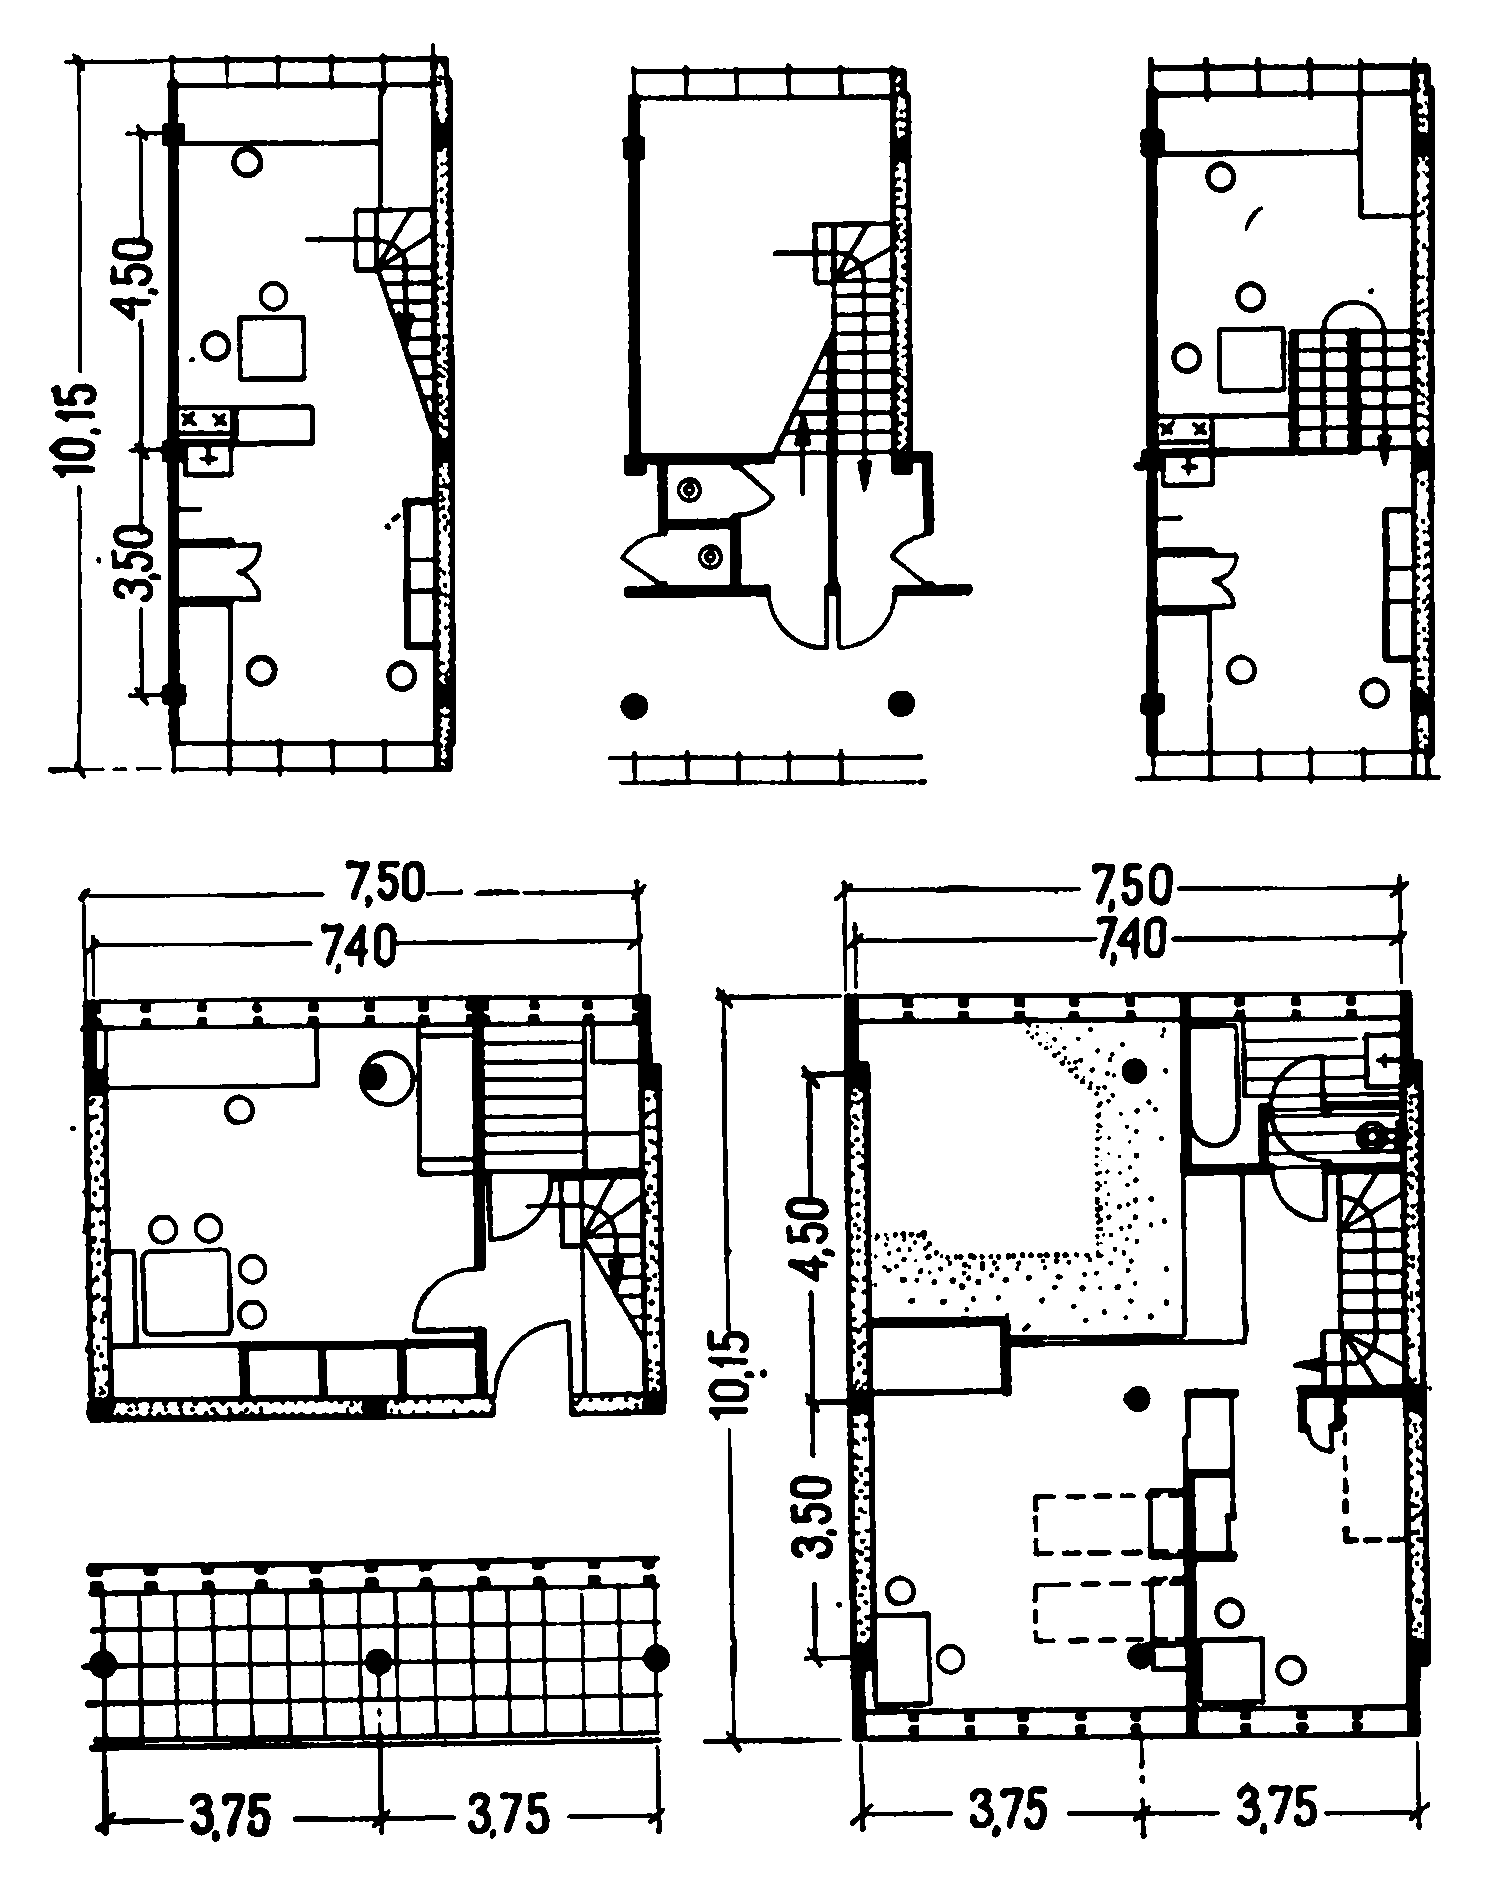 62. Пространственные жилые ячейки типа Ф, разработанные в секции типизации Стройкома РСФСР и использованные в доме на Новинском бульваре